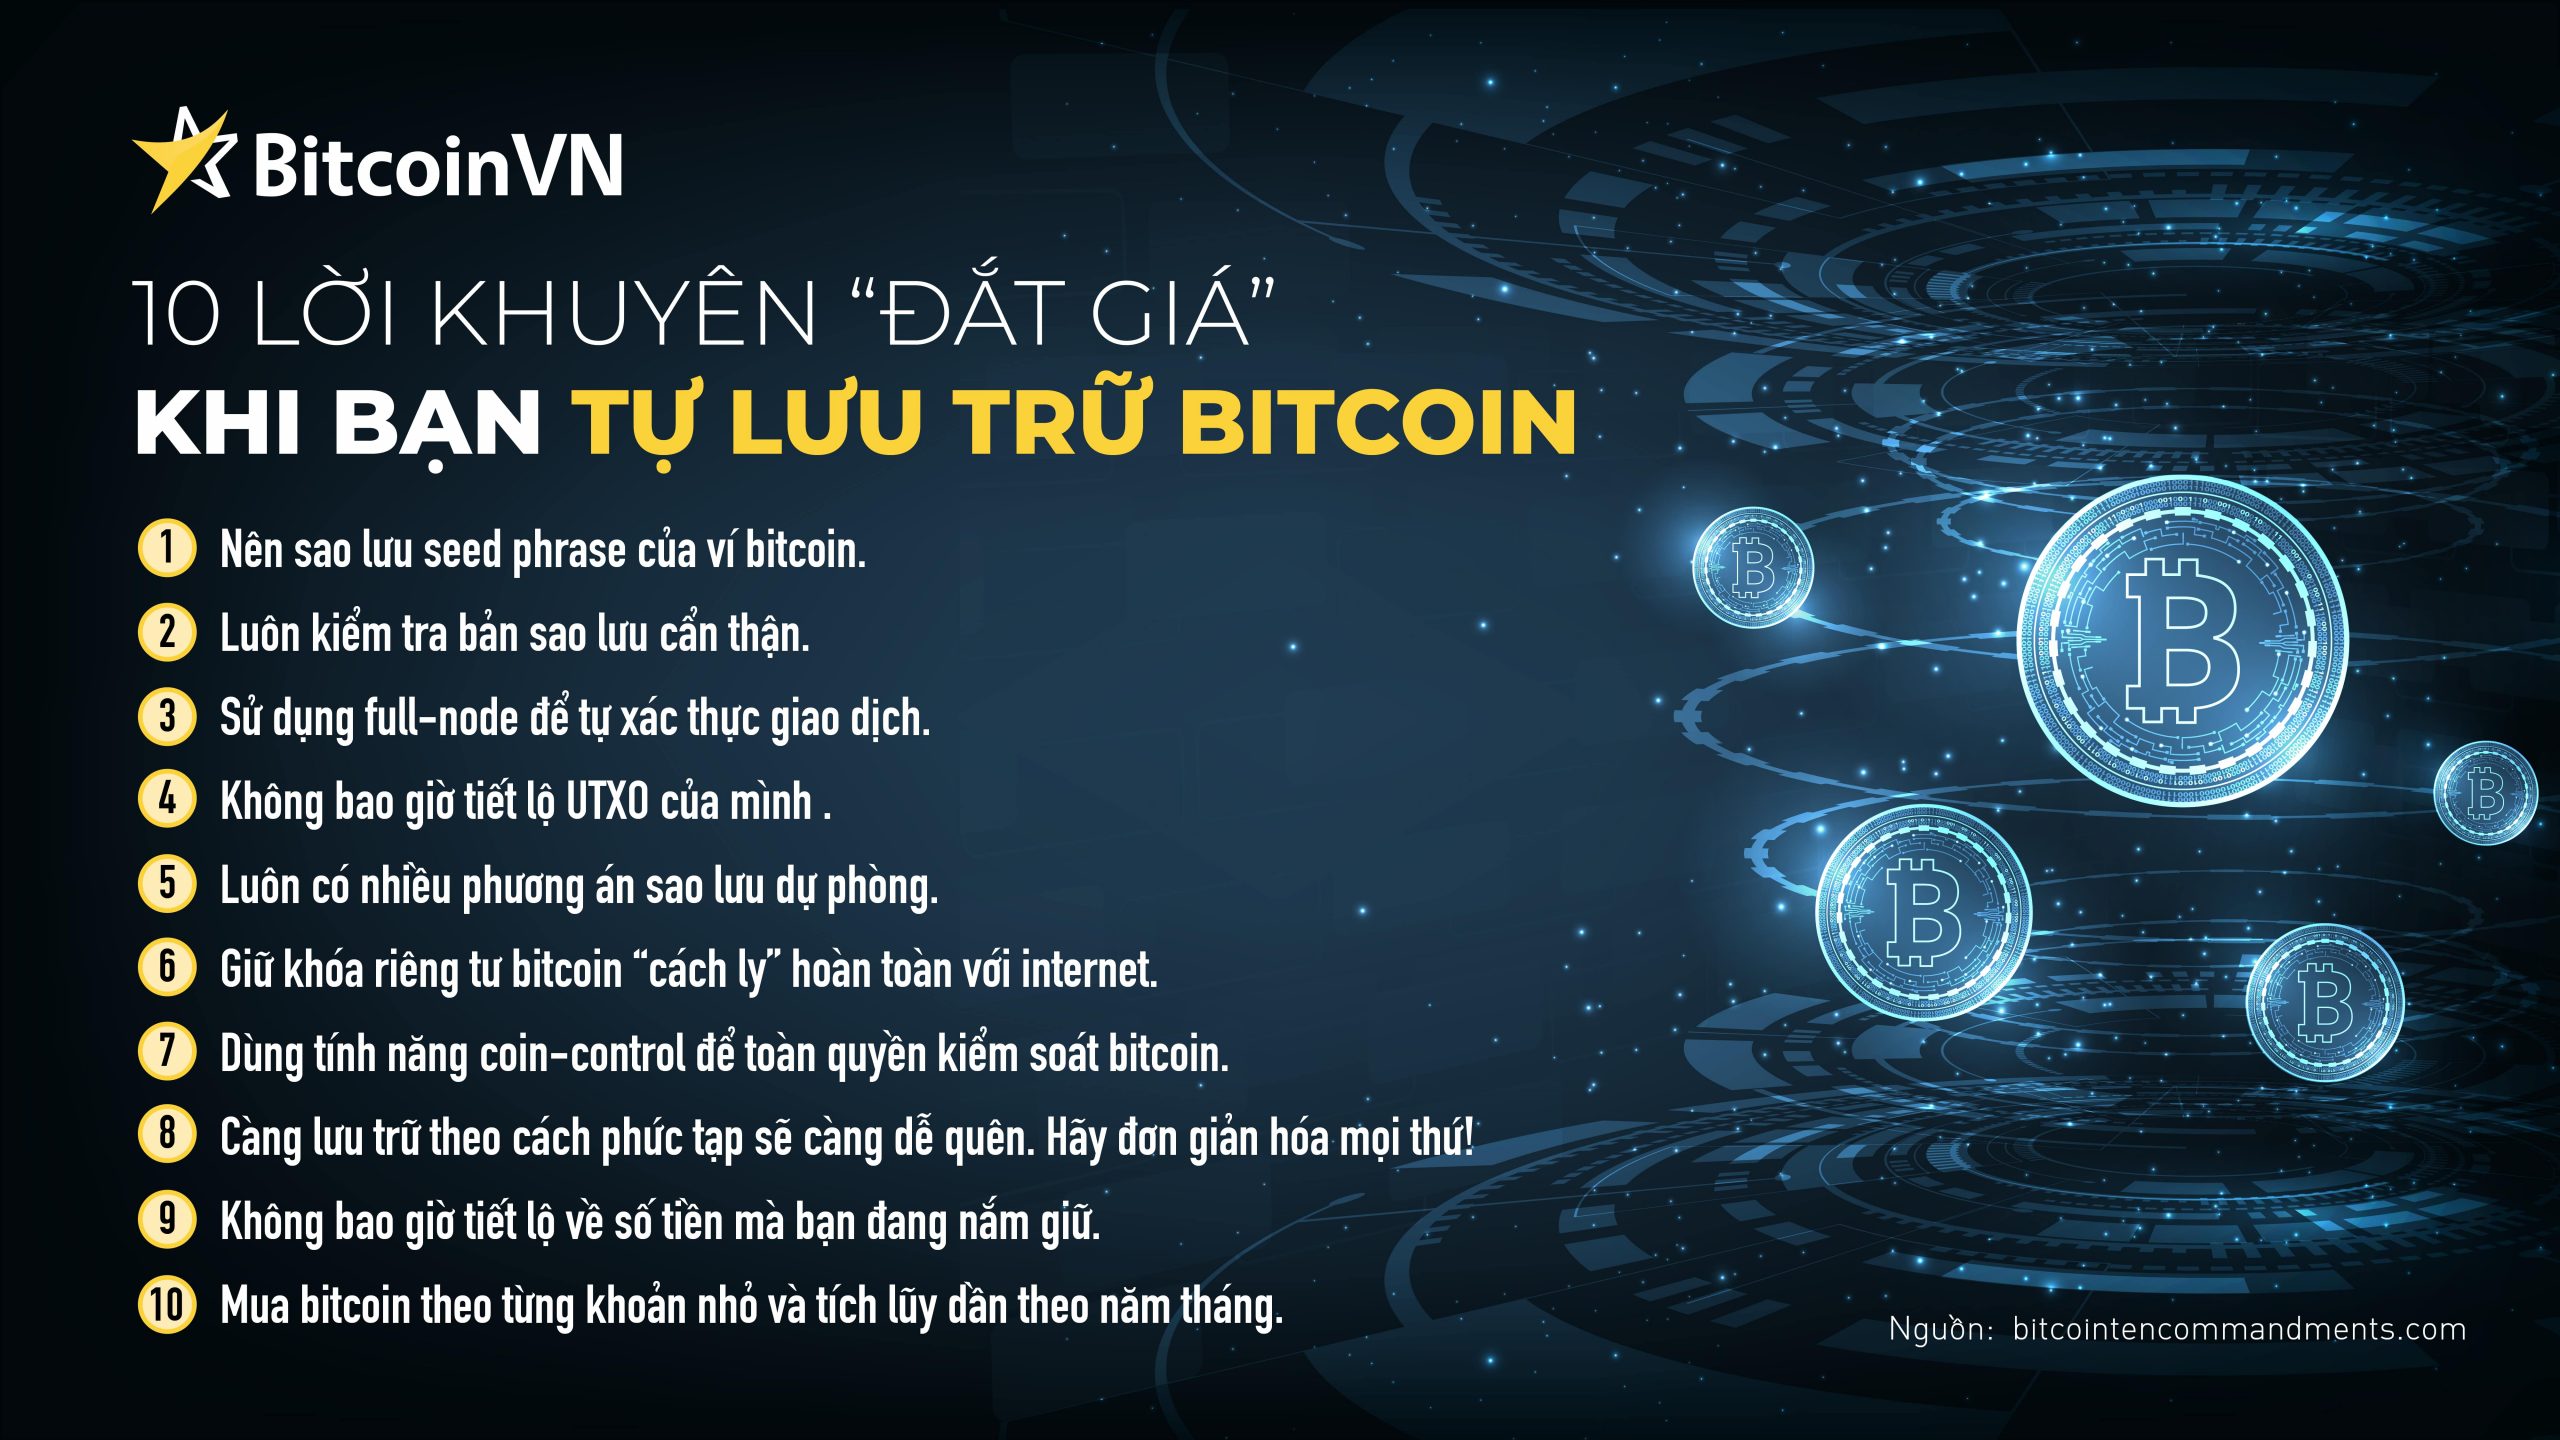 The “Bitcoin Ten Commandments” - now in Vietnamese